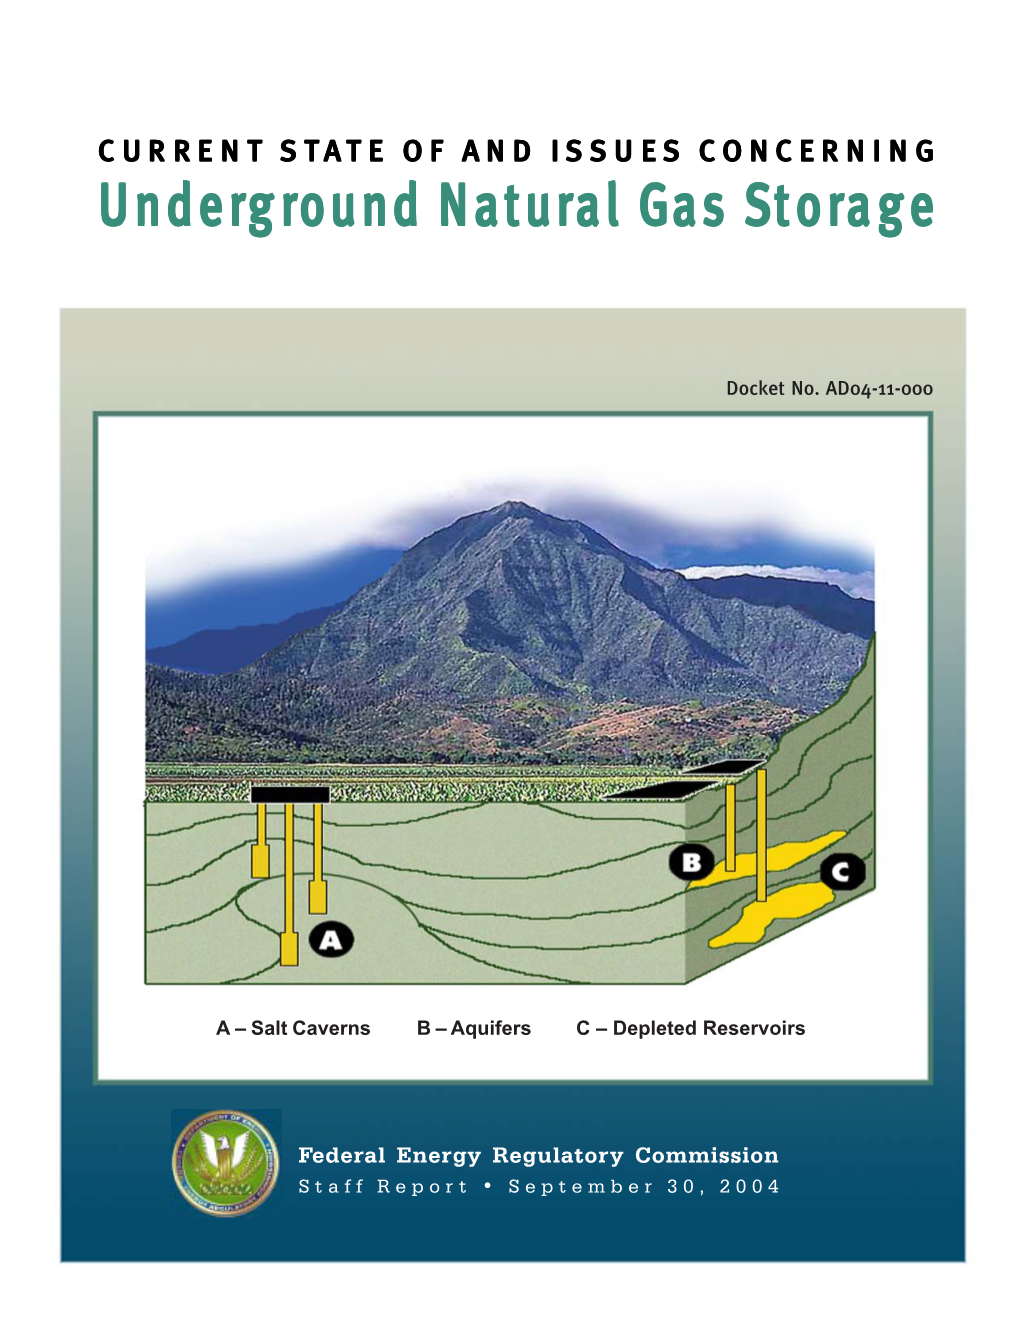 Underground Natural Gas Storage Report